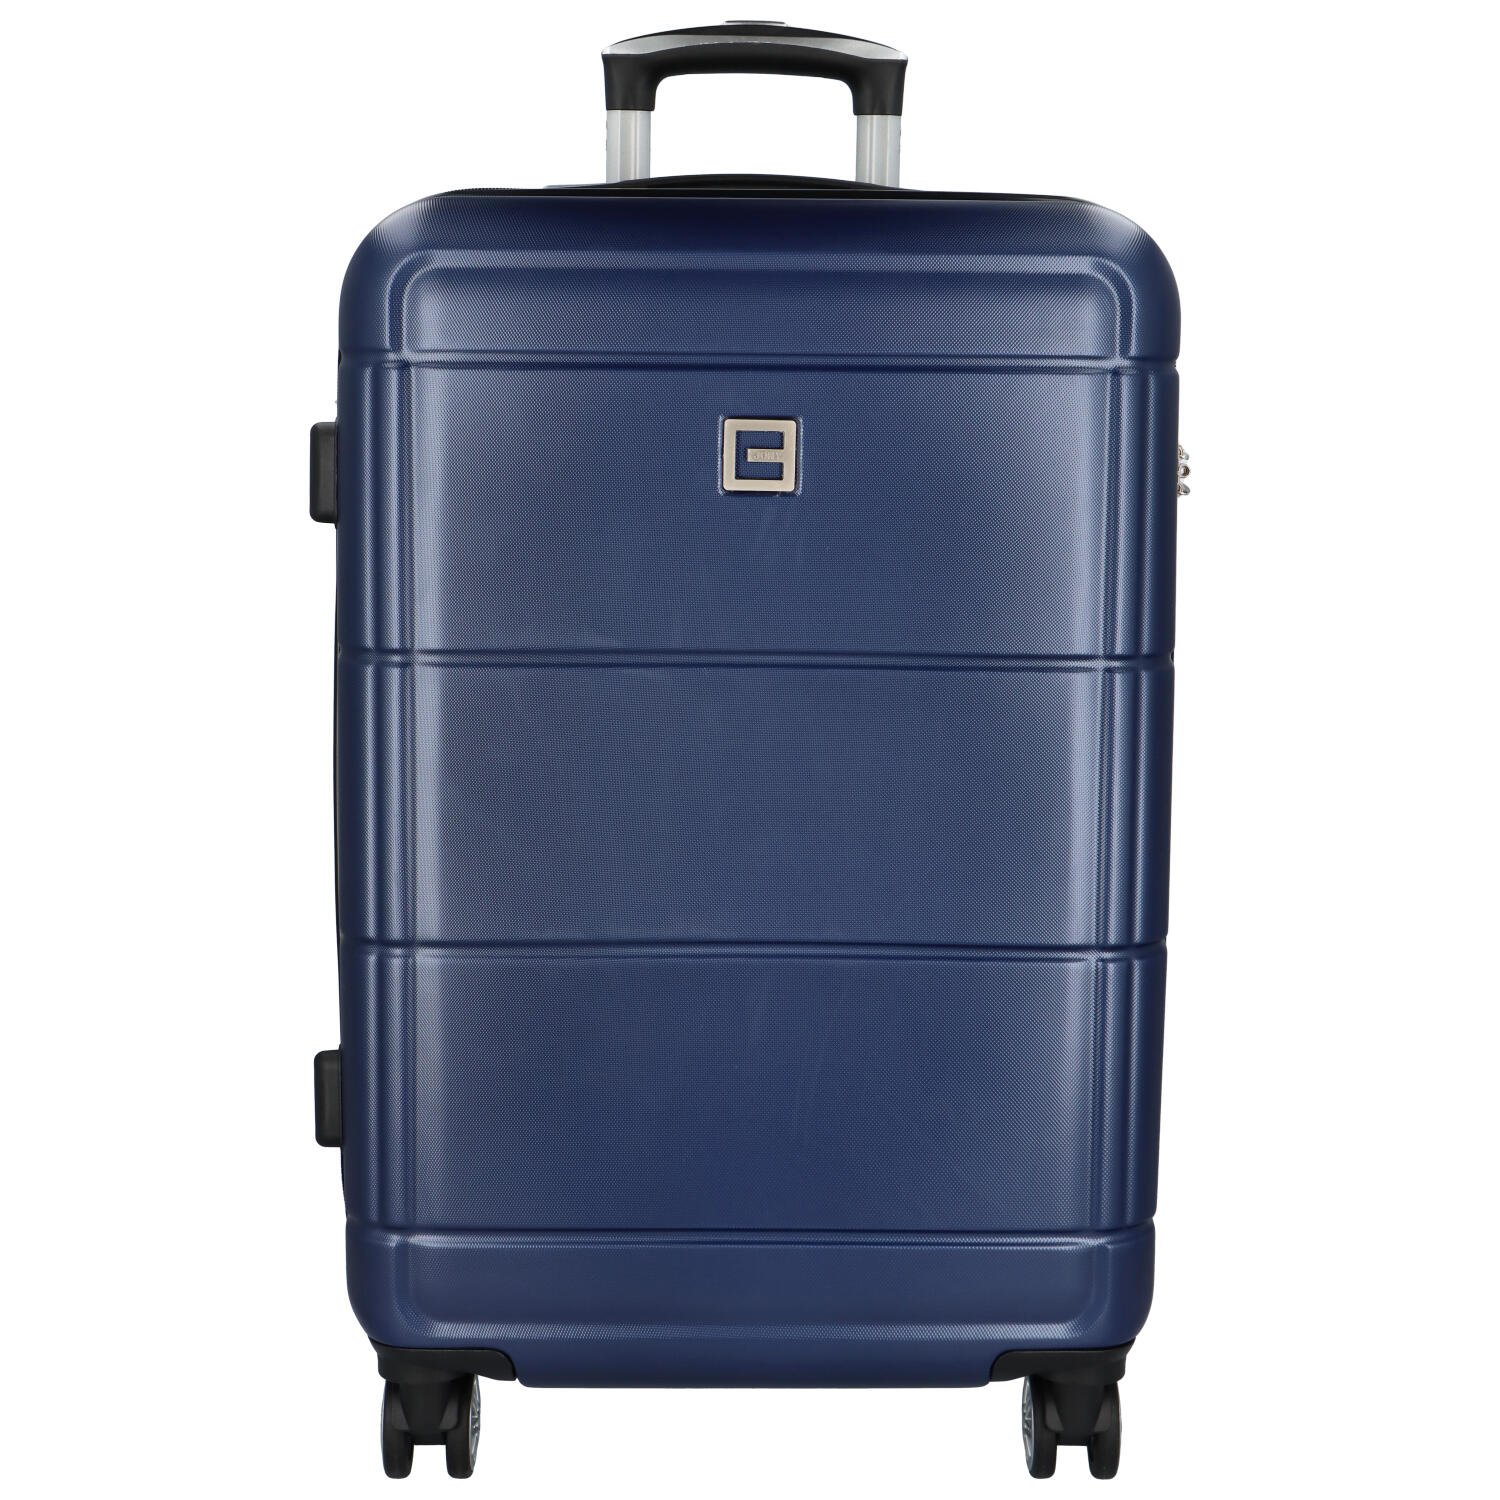 Cestovní plastový kufr Gothard velikost M, tmavě modrý